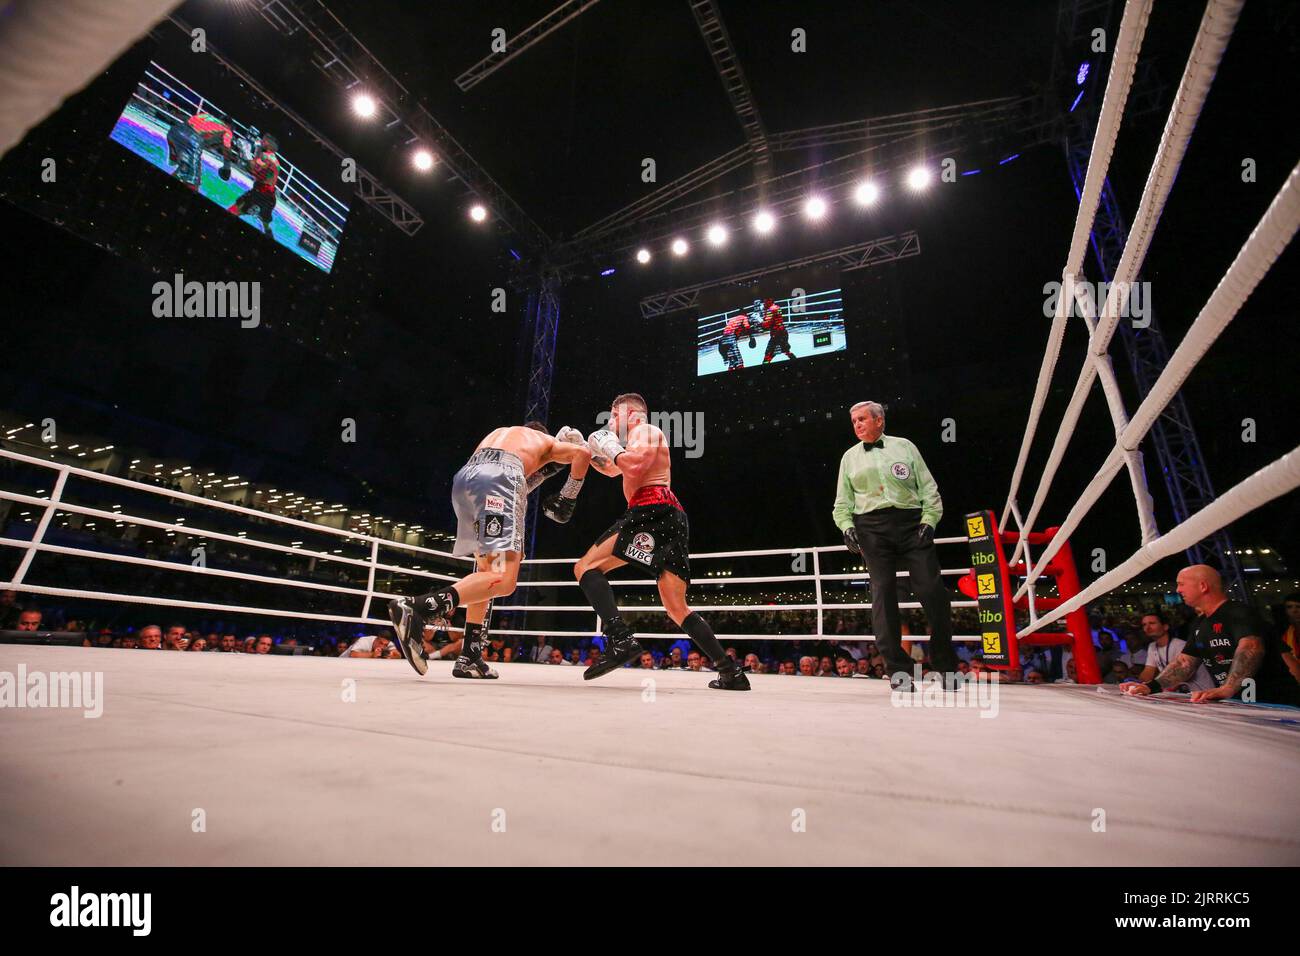 Tirana, Albanien. 25. Aug, 2022. Während des Boxkampfes zwischen Florian Marku und Miguel parra um WBC gewichtet Welter Silver Interim, am 25